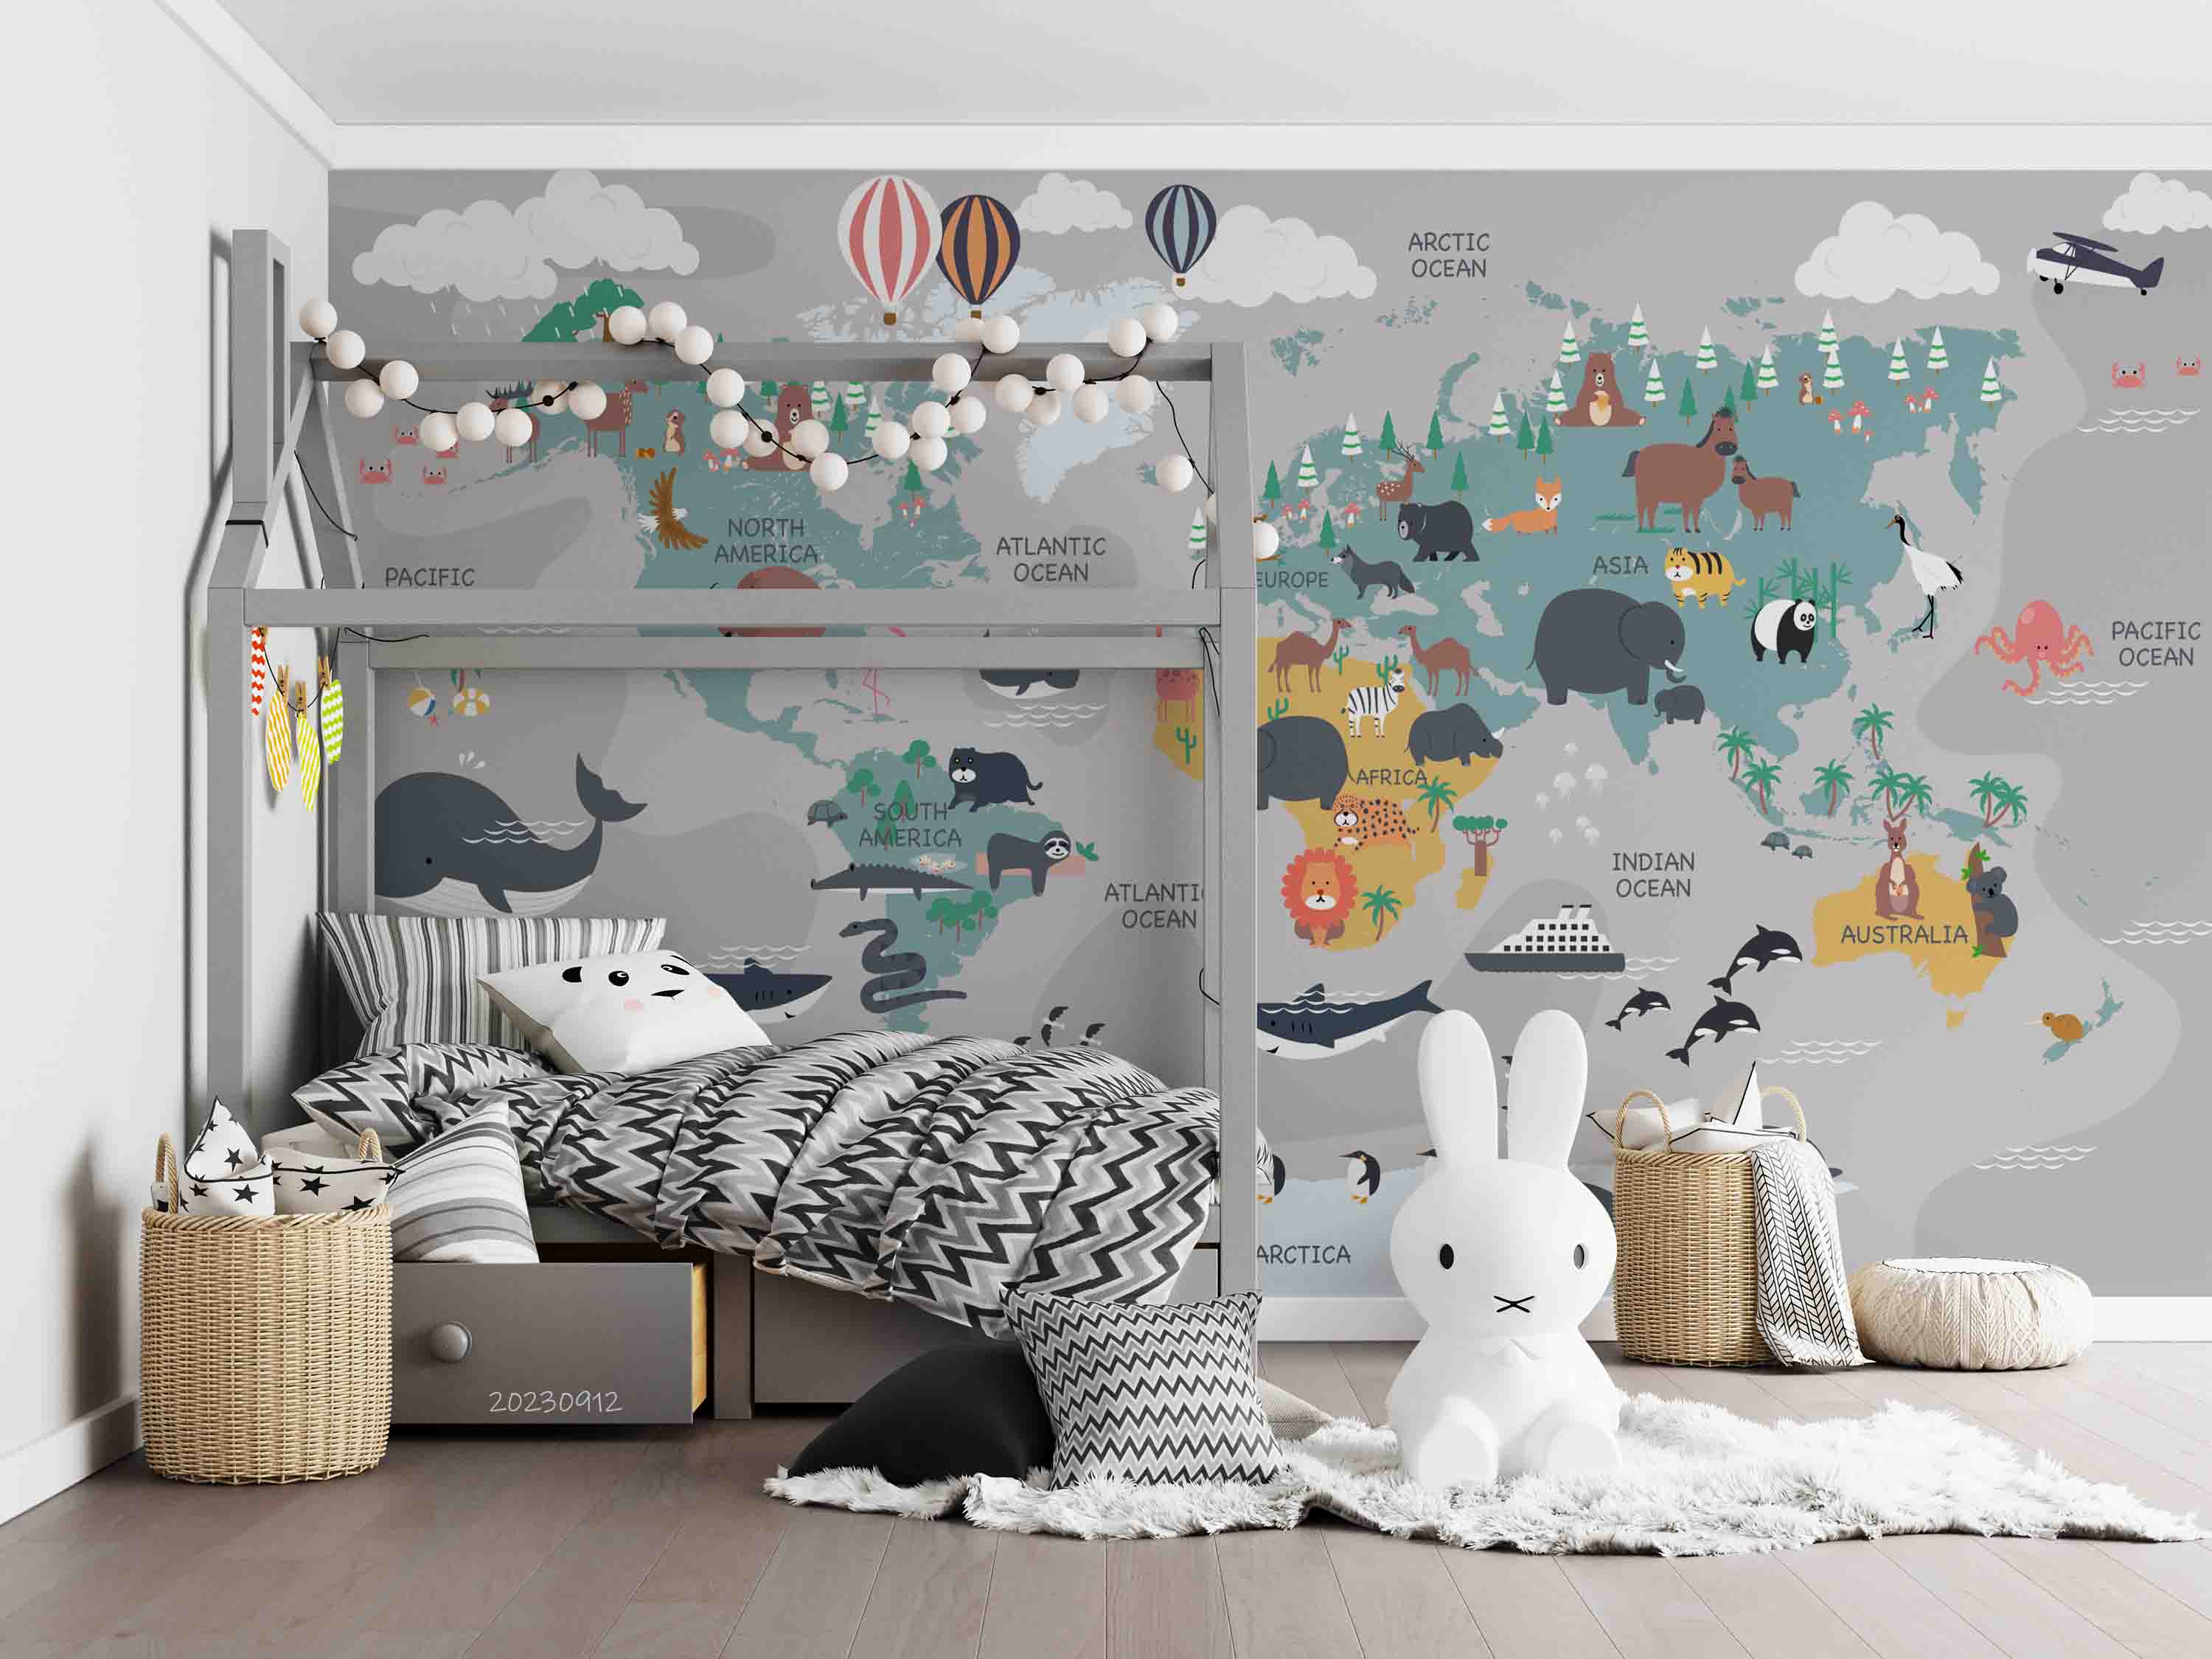 3D World Map Hydrogen Balloon Penuins Wall Mural Wallpaper YXL 2616